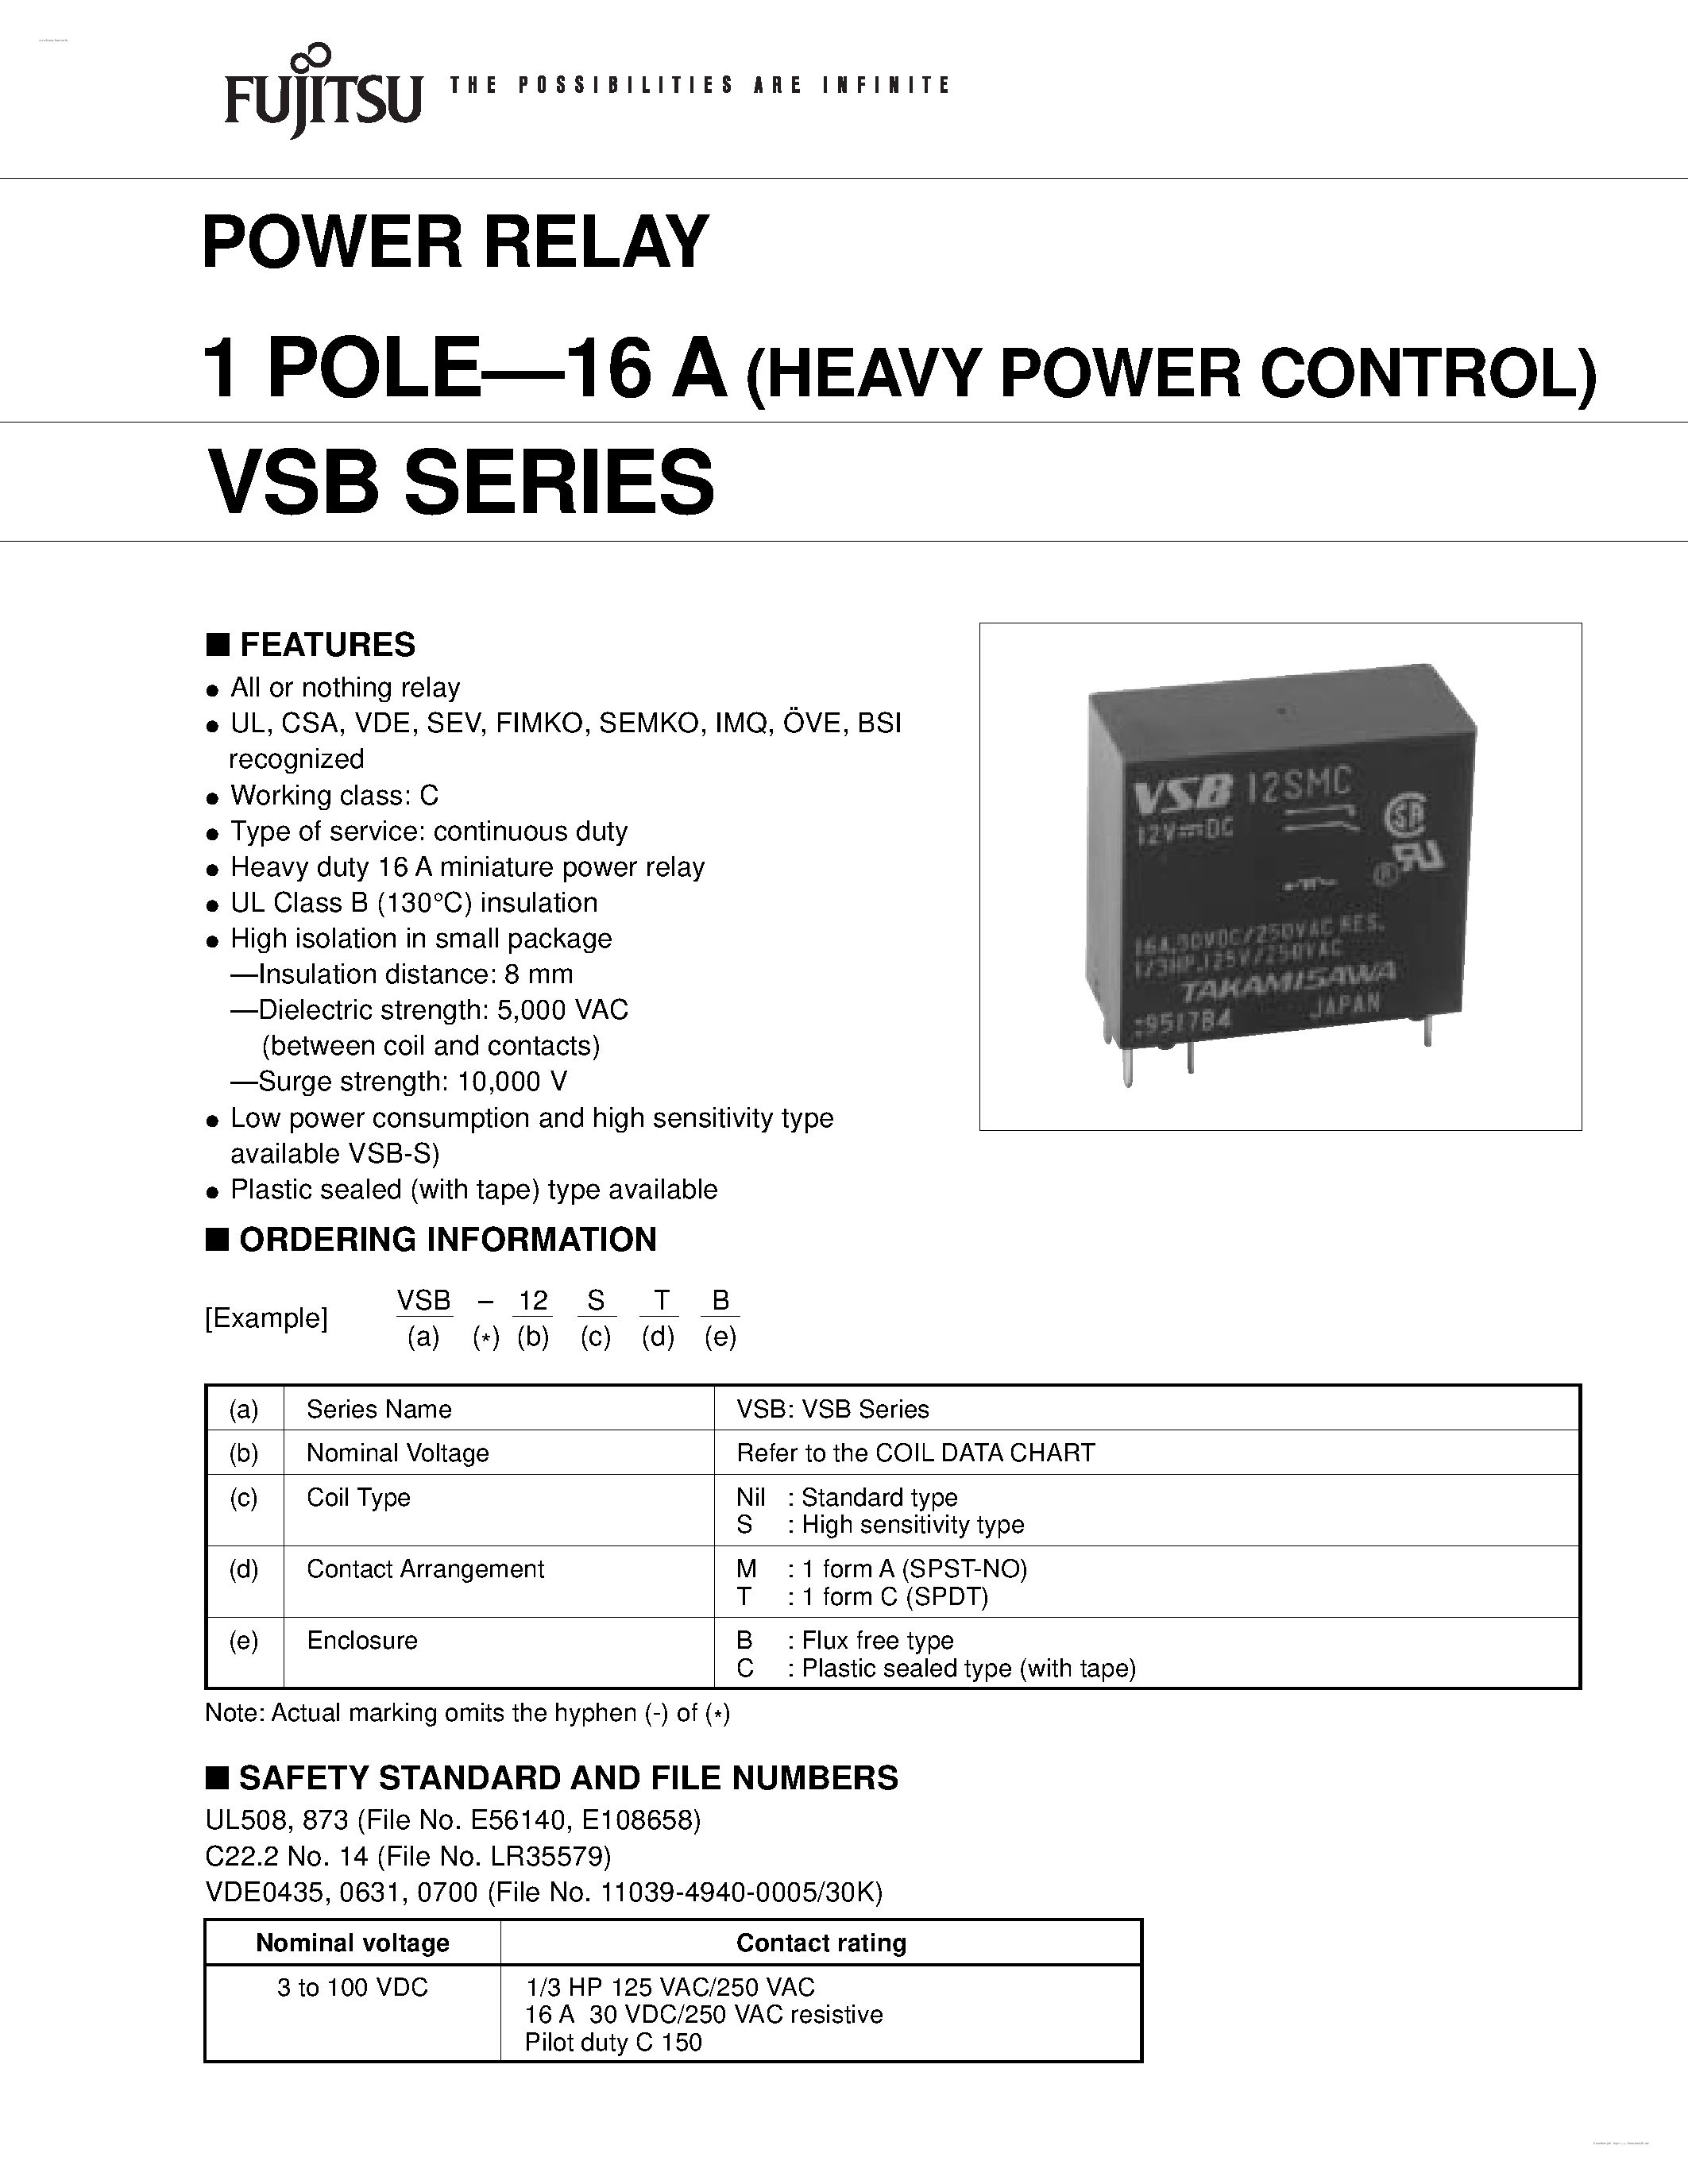 Даташит VSB - 1 POLE-16 A (HEAVY POWER CONTROL) VSB SERIES страница 1